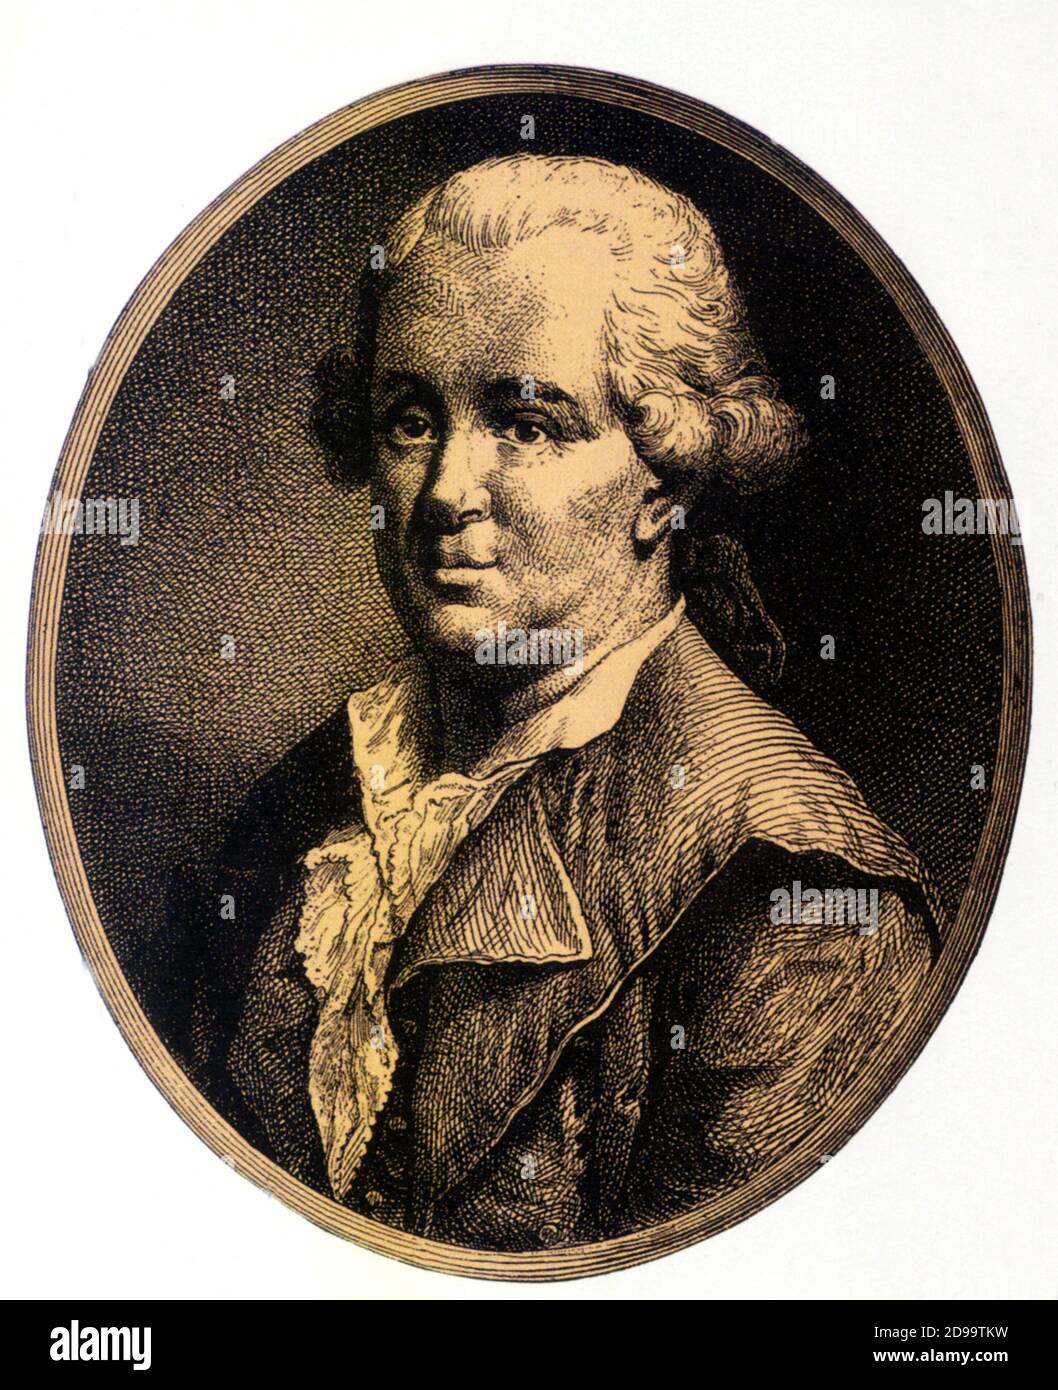 Le célèbre médecin autrichien Franz Anton MESMER ( 1734 - 1815 ) , théorisé des champs magnétiques et de l'influence astrologique des planètes , Fondé sur l'hypnotisme et la suggestion - CAMPI MAGNETICI - MAGNETISMO - MEDICINA - HEALTER - mago - magicien - ASTROLOGIA - Astrologie - FISICA - MESMERISMO - IPNOTISMO - IPNOTISTA - MESMERISM - PARAPSICOLOGIA - PARAPSICOLOGIA - GY - GAGIGEO- GEF- GEGONOMEO - GBO- GEGIBO- GEGIBO- GEGONAT- G Banque D'Images